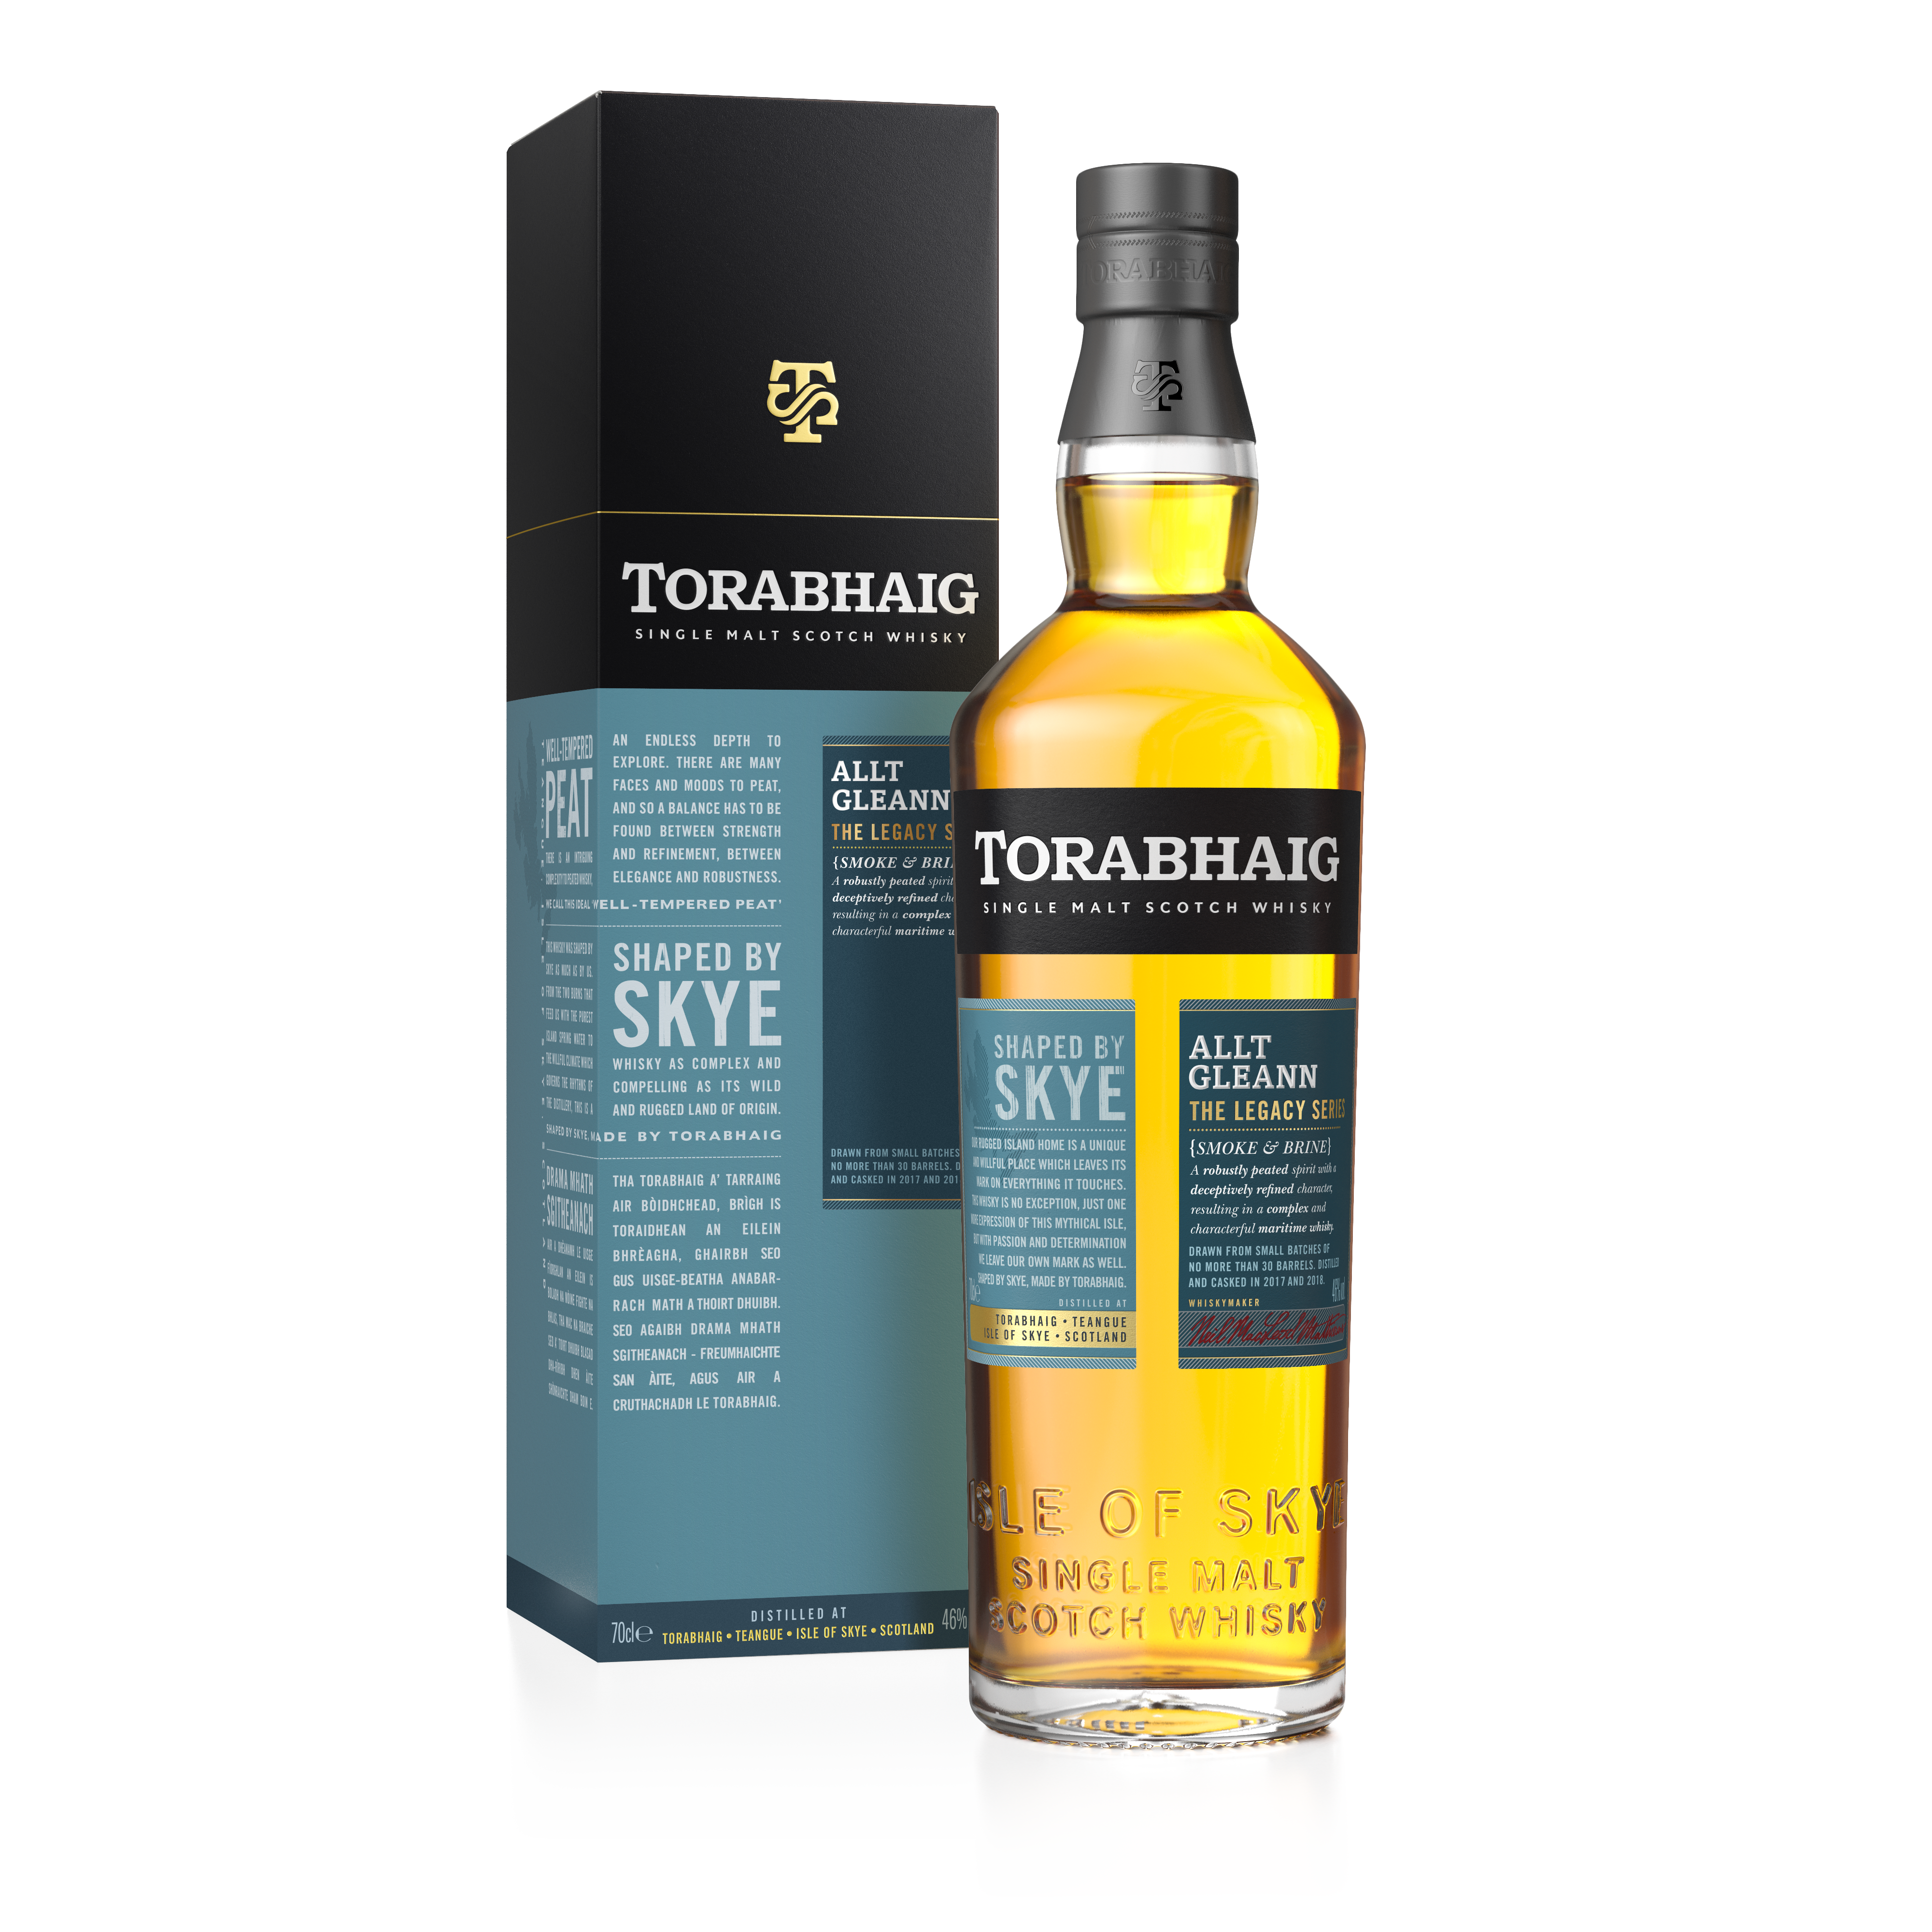 Torabhaig Single - Series Edition Gleann, Legacy Malt The Distillery Torabhaig - 2nd Allt